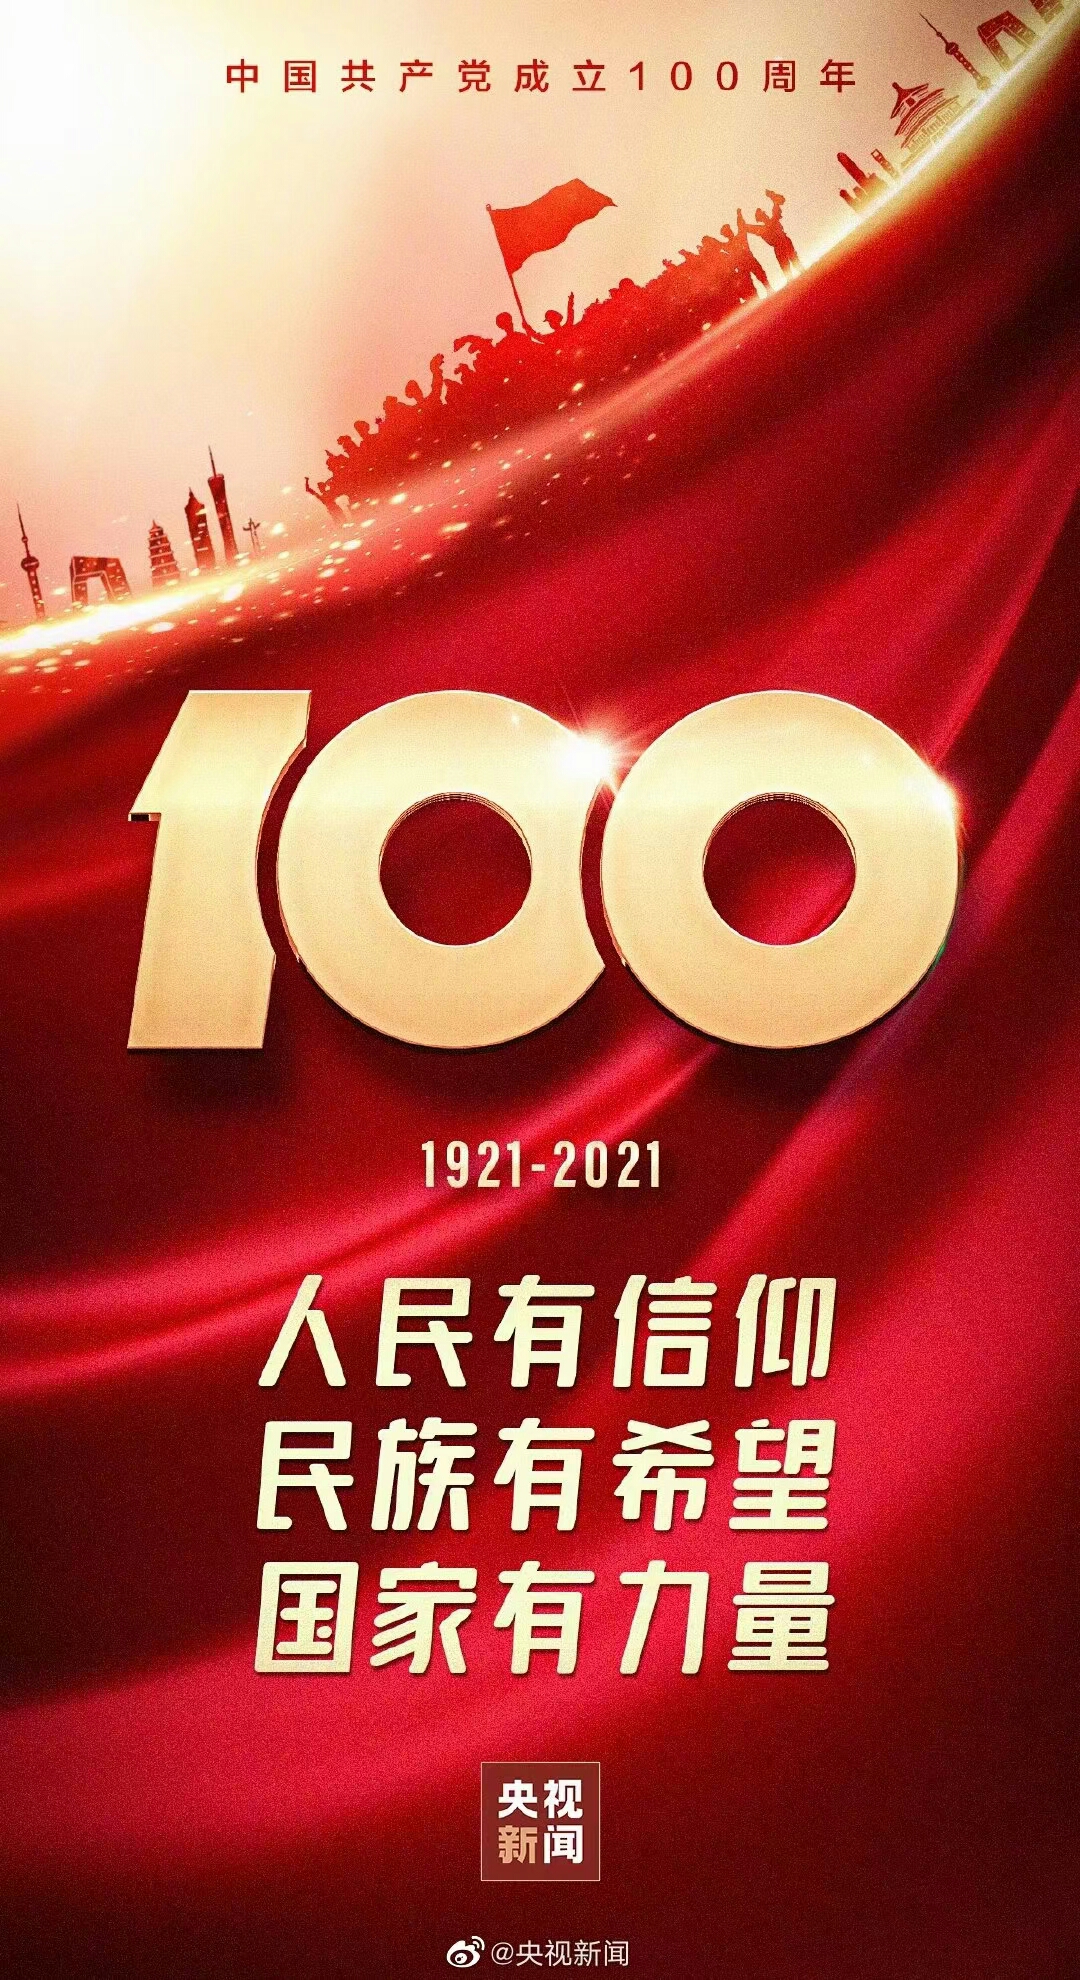 在庆祝中国成立100周年大会上的讲话